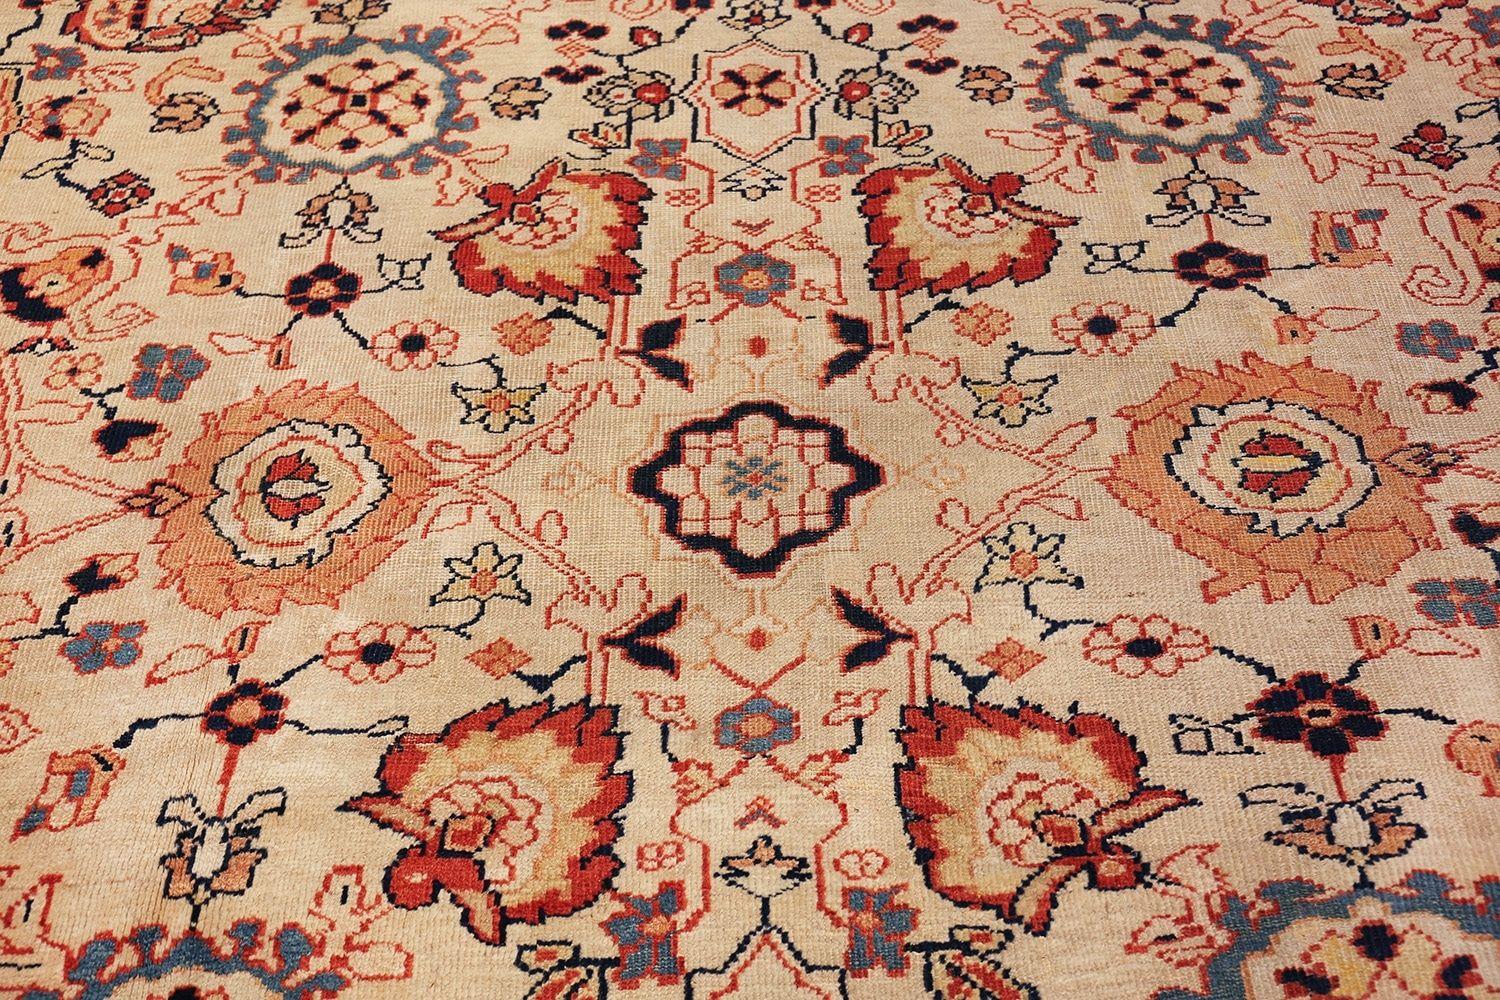 Schöne Zimmer Größe Größe Elfenbein Hintergrund persischen antiken Sultanabad Teppich, Herkunftsland: Persien, CIRCA Datum: Spätes 19. Jahrhundert. Größe: 11 ft x 14 ft 4 in (3,35 m x 4,37 m).